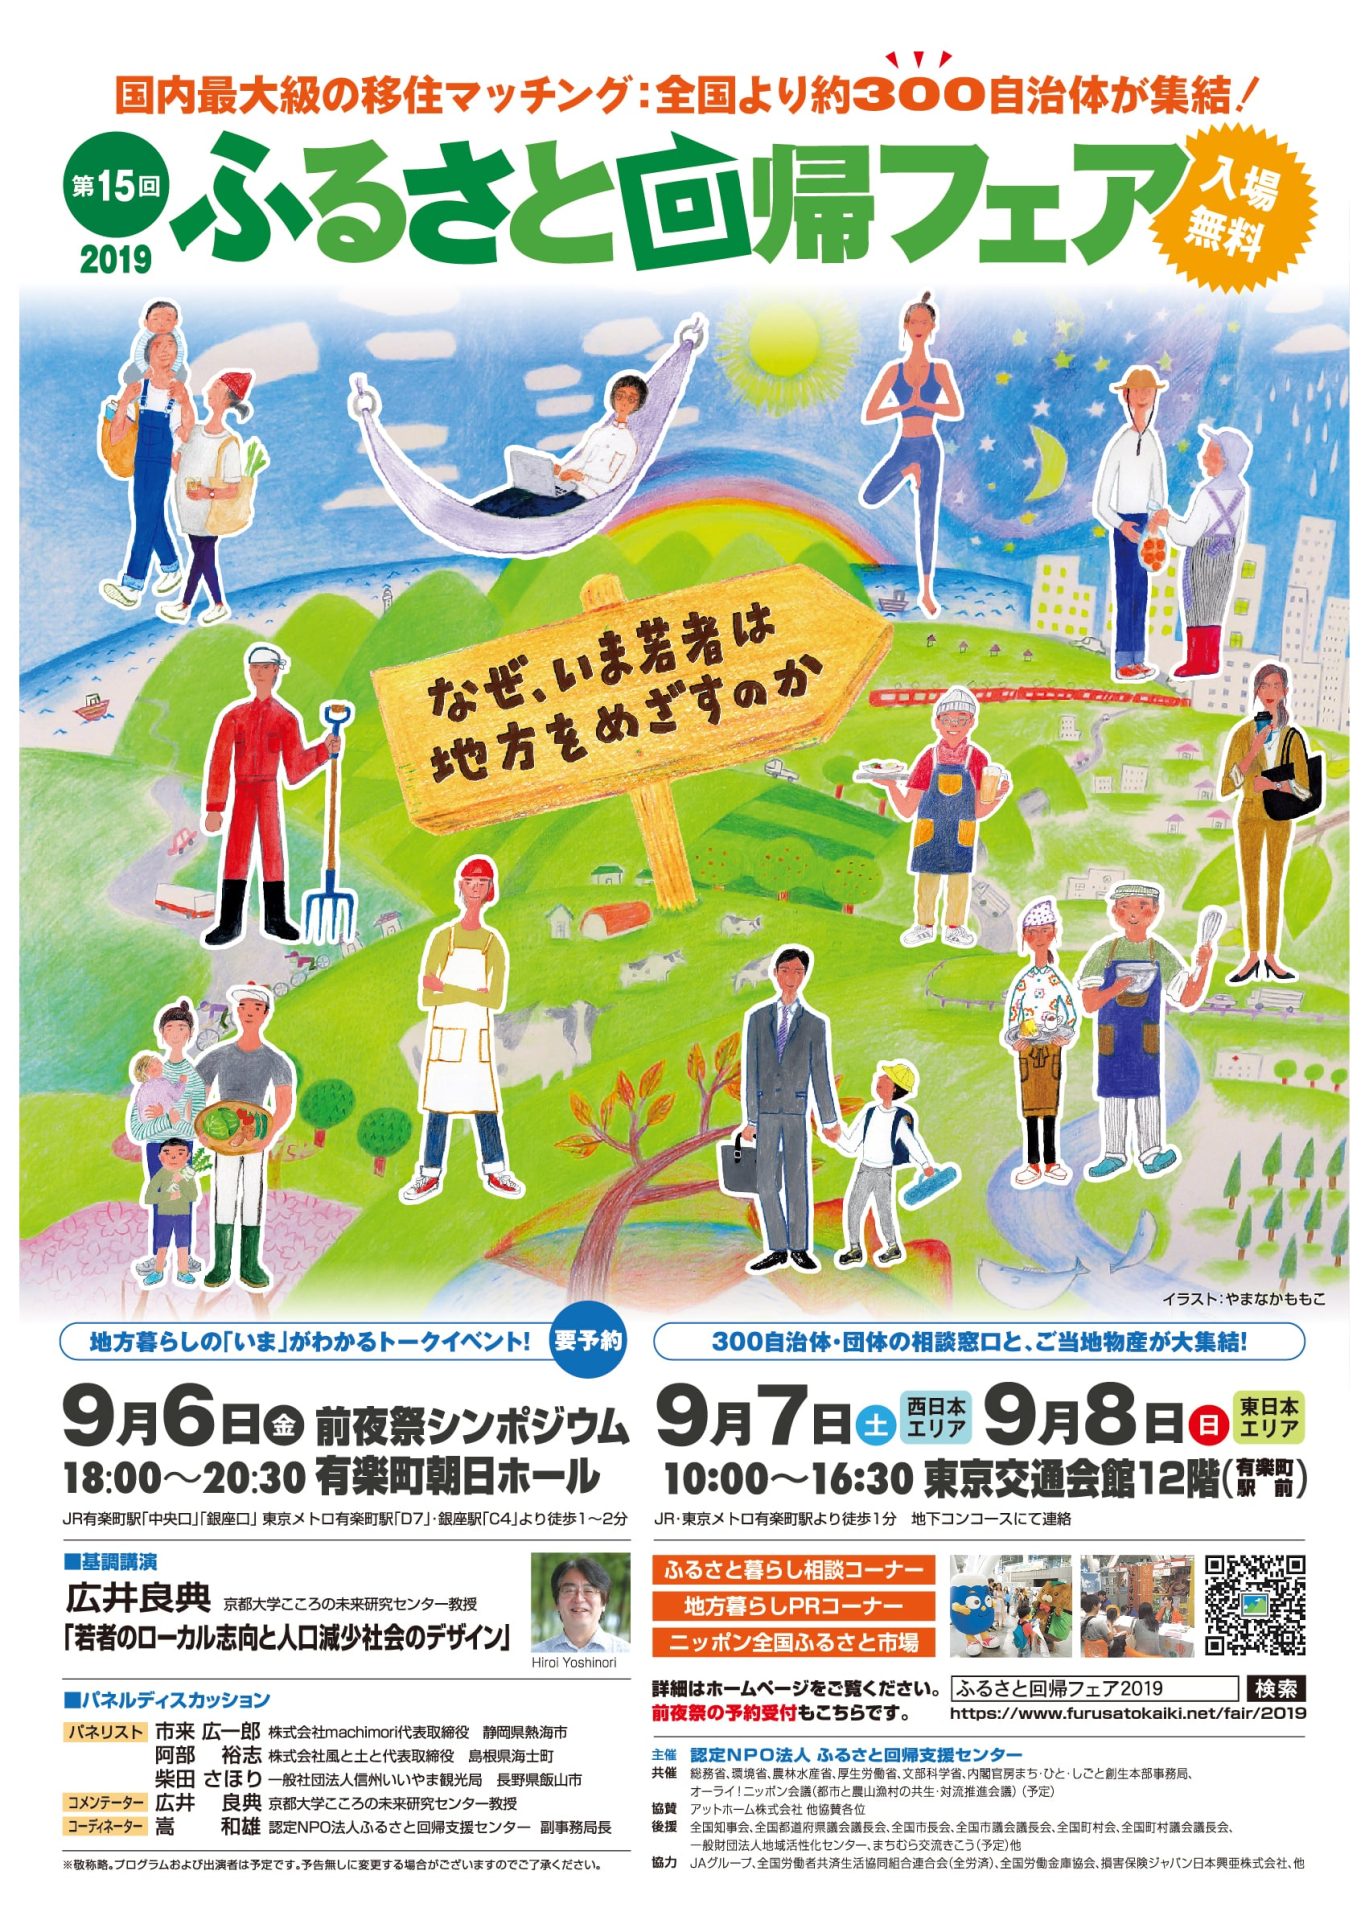 【西日本エリア】第15回 ふるさと回帰フェア2019<br>～なぜ、いま若者は地方をめざすのか～ | 移住関連イベント情報